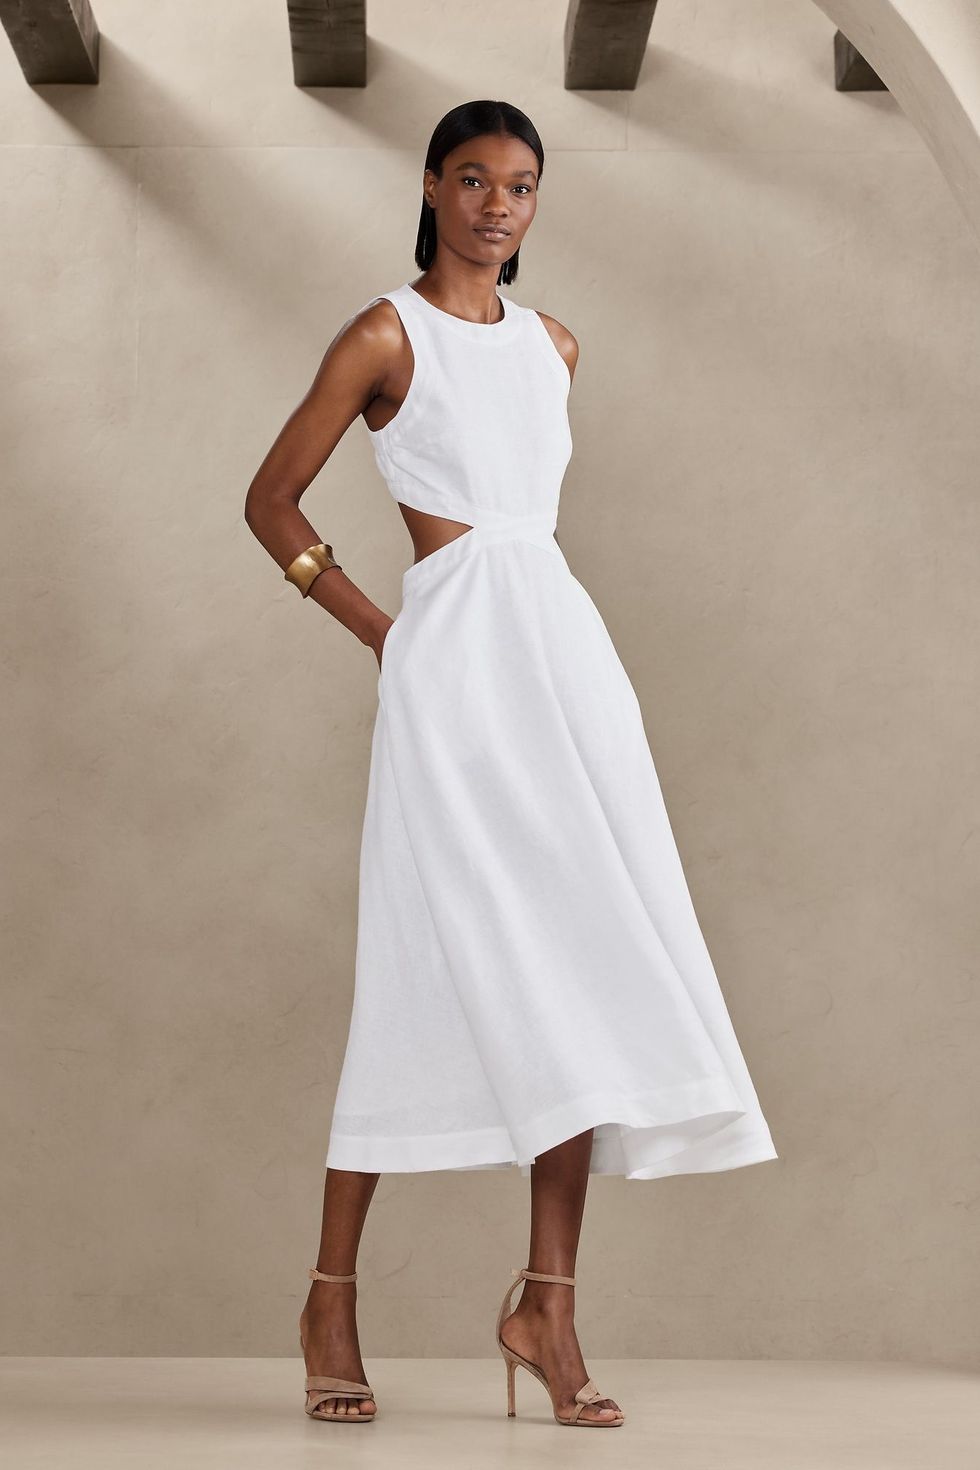 CASSI Linen Backless Dress With Halter Neck Backless Halter Dress White  Linen Dress Evening Dress Linen Beach Dress Romantic Dress 